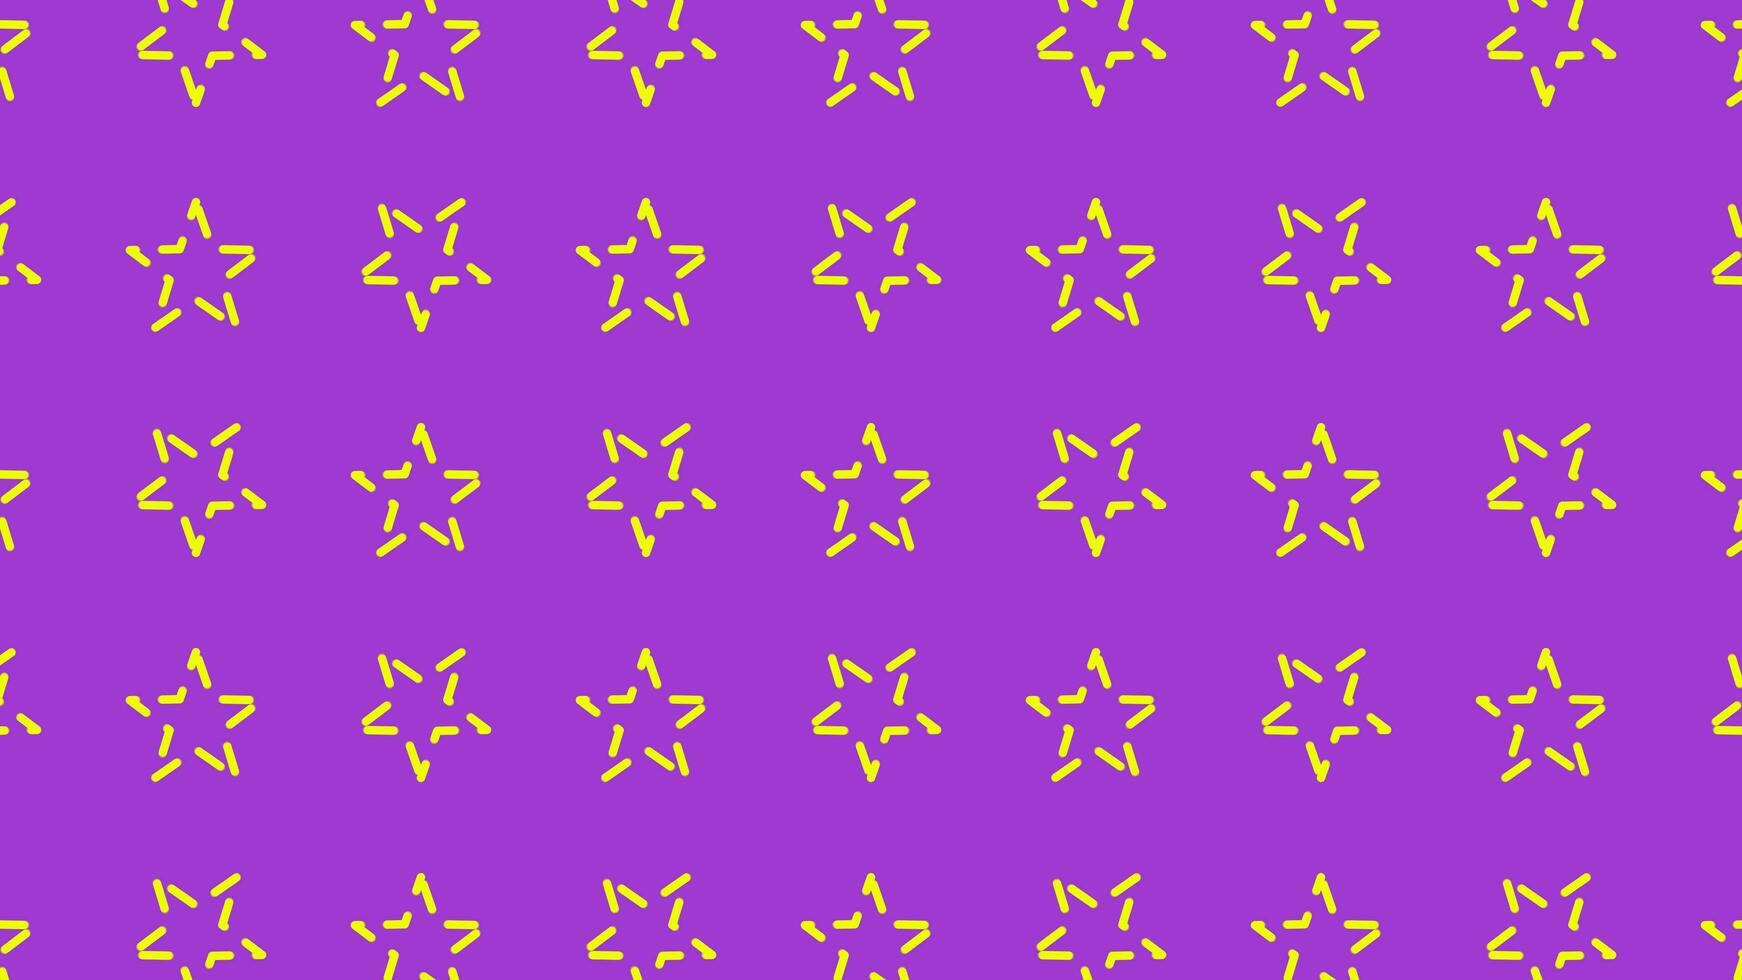 animado 2d background.video padronizar simples ciclo pequeno estrelas girar em pastel background.abstract padronizar com Estrela modeladores.motion gráfico Projeto para pôster, capa.branding dinâmico têxtil ilustração foto